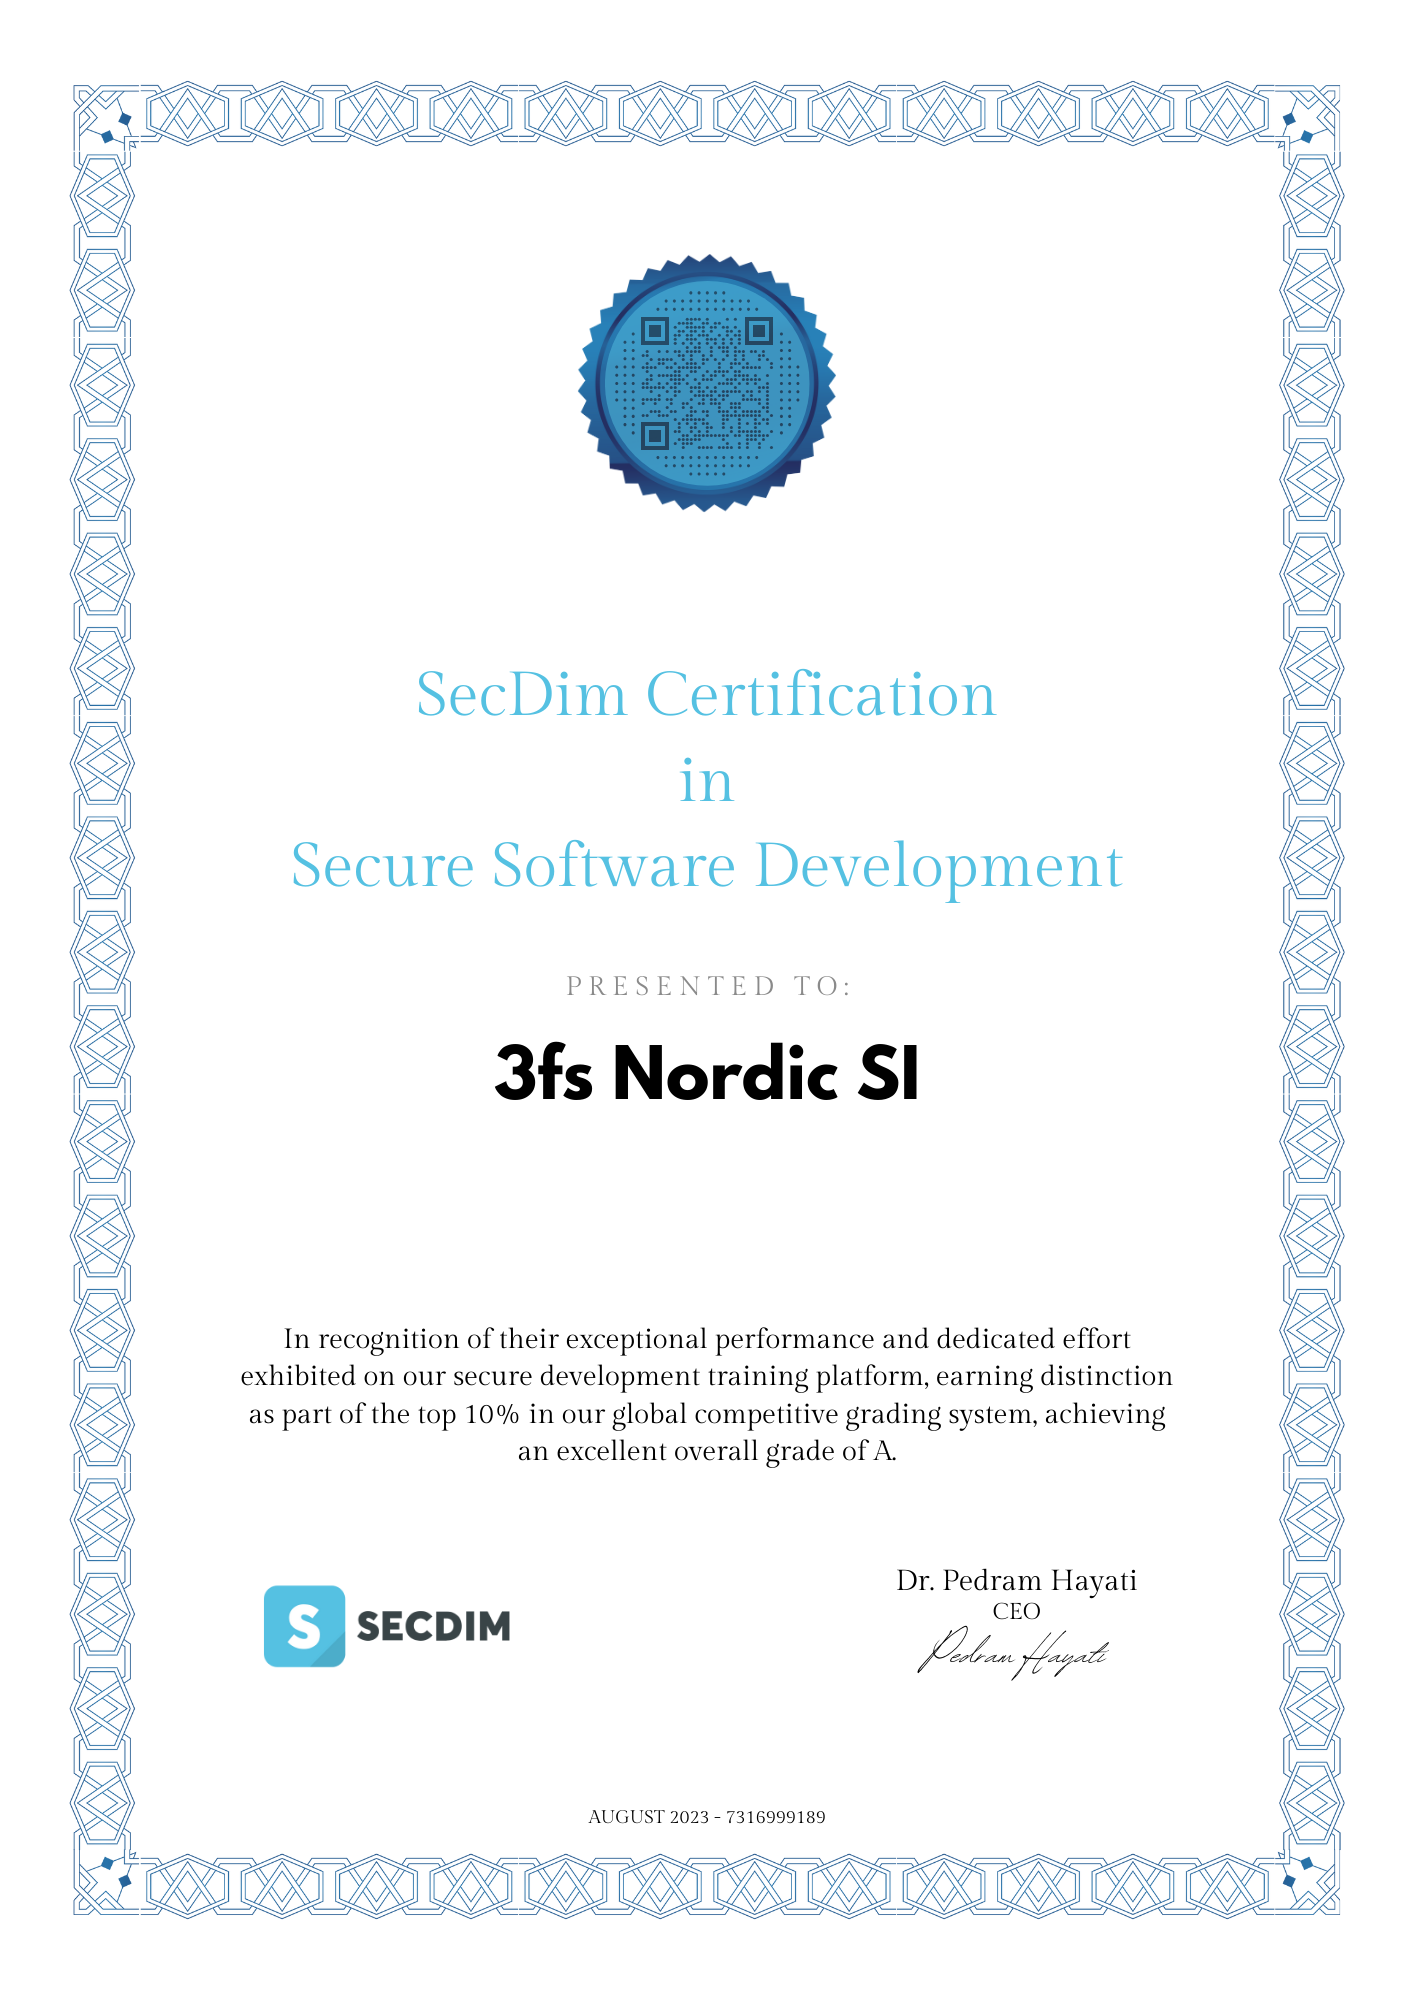 3fs certificate